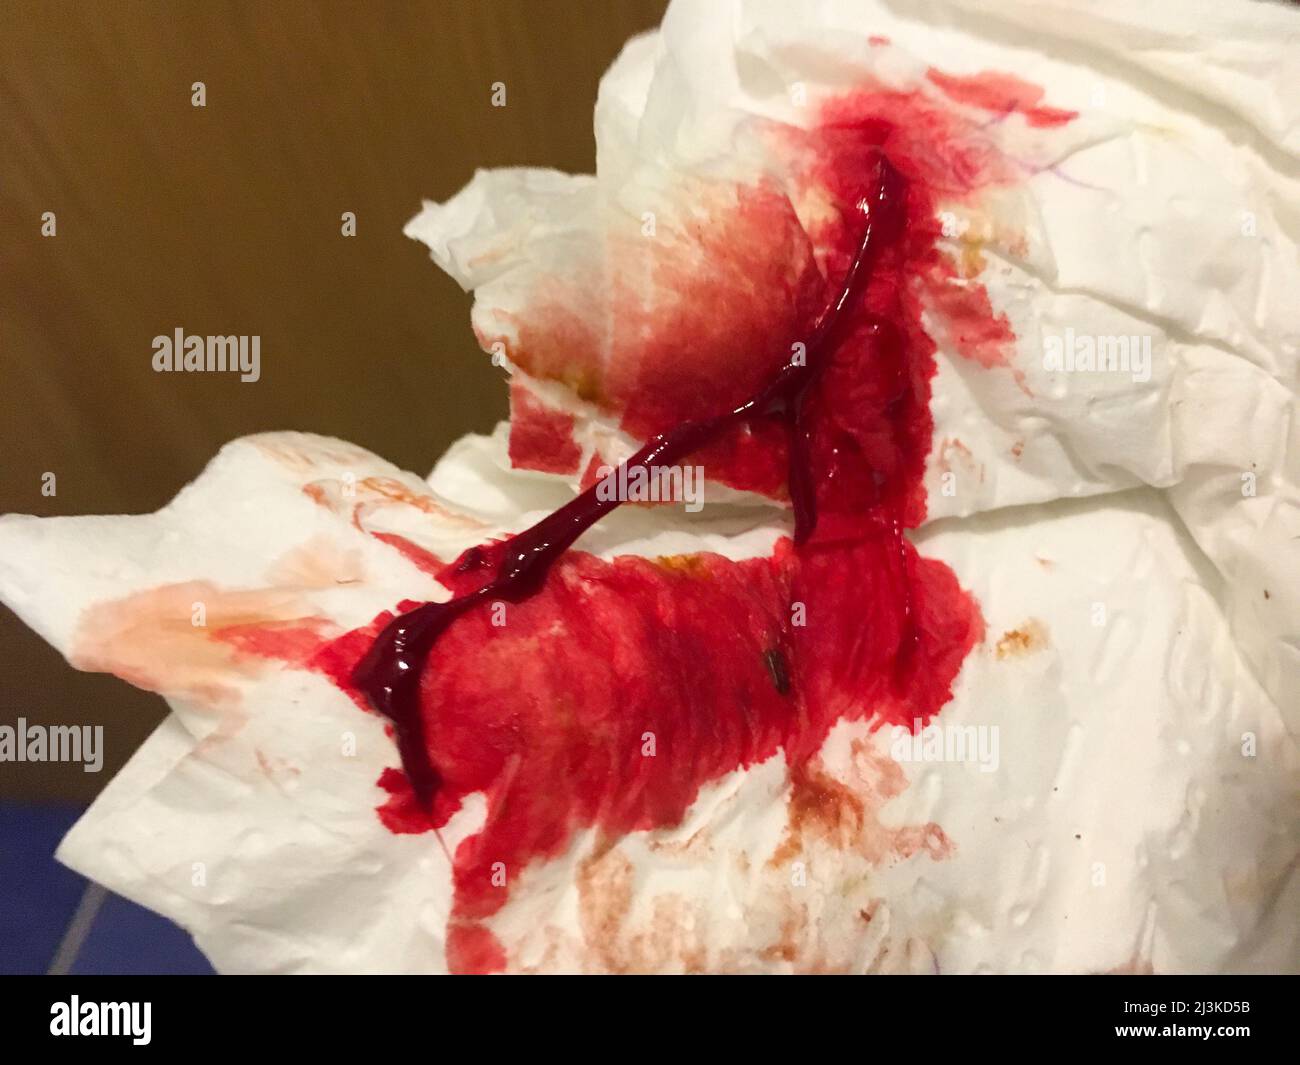 Hämorrhoiden Blut und Schleim auf dem Toilettenpapier Stockfotografie -  Alamy